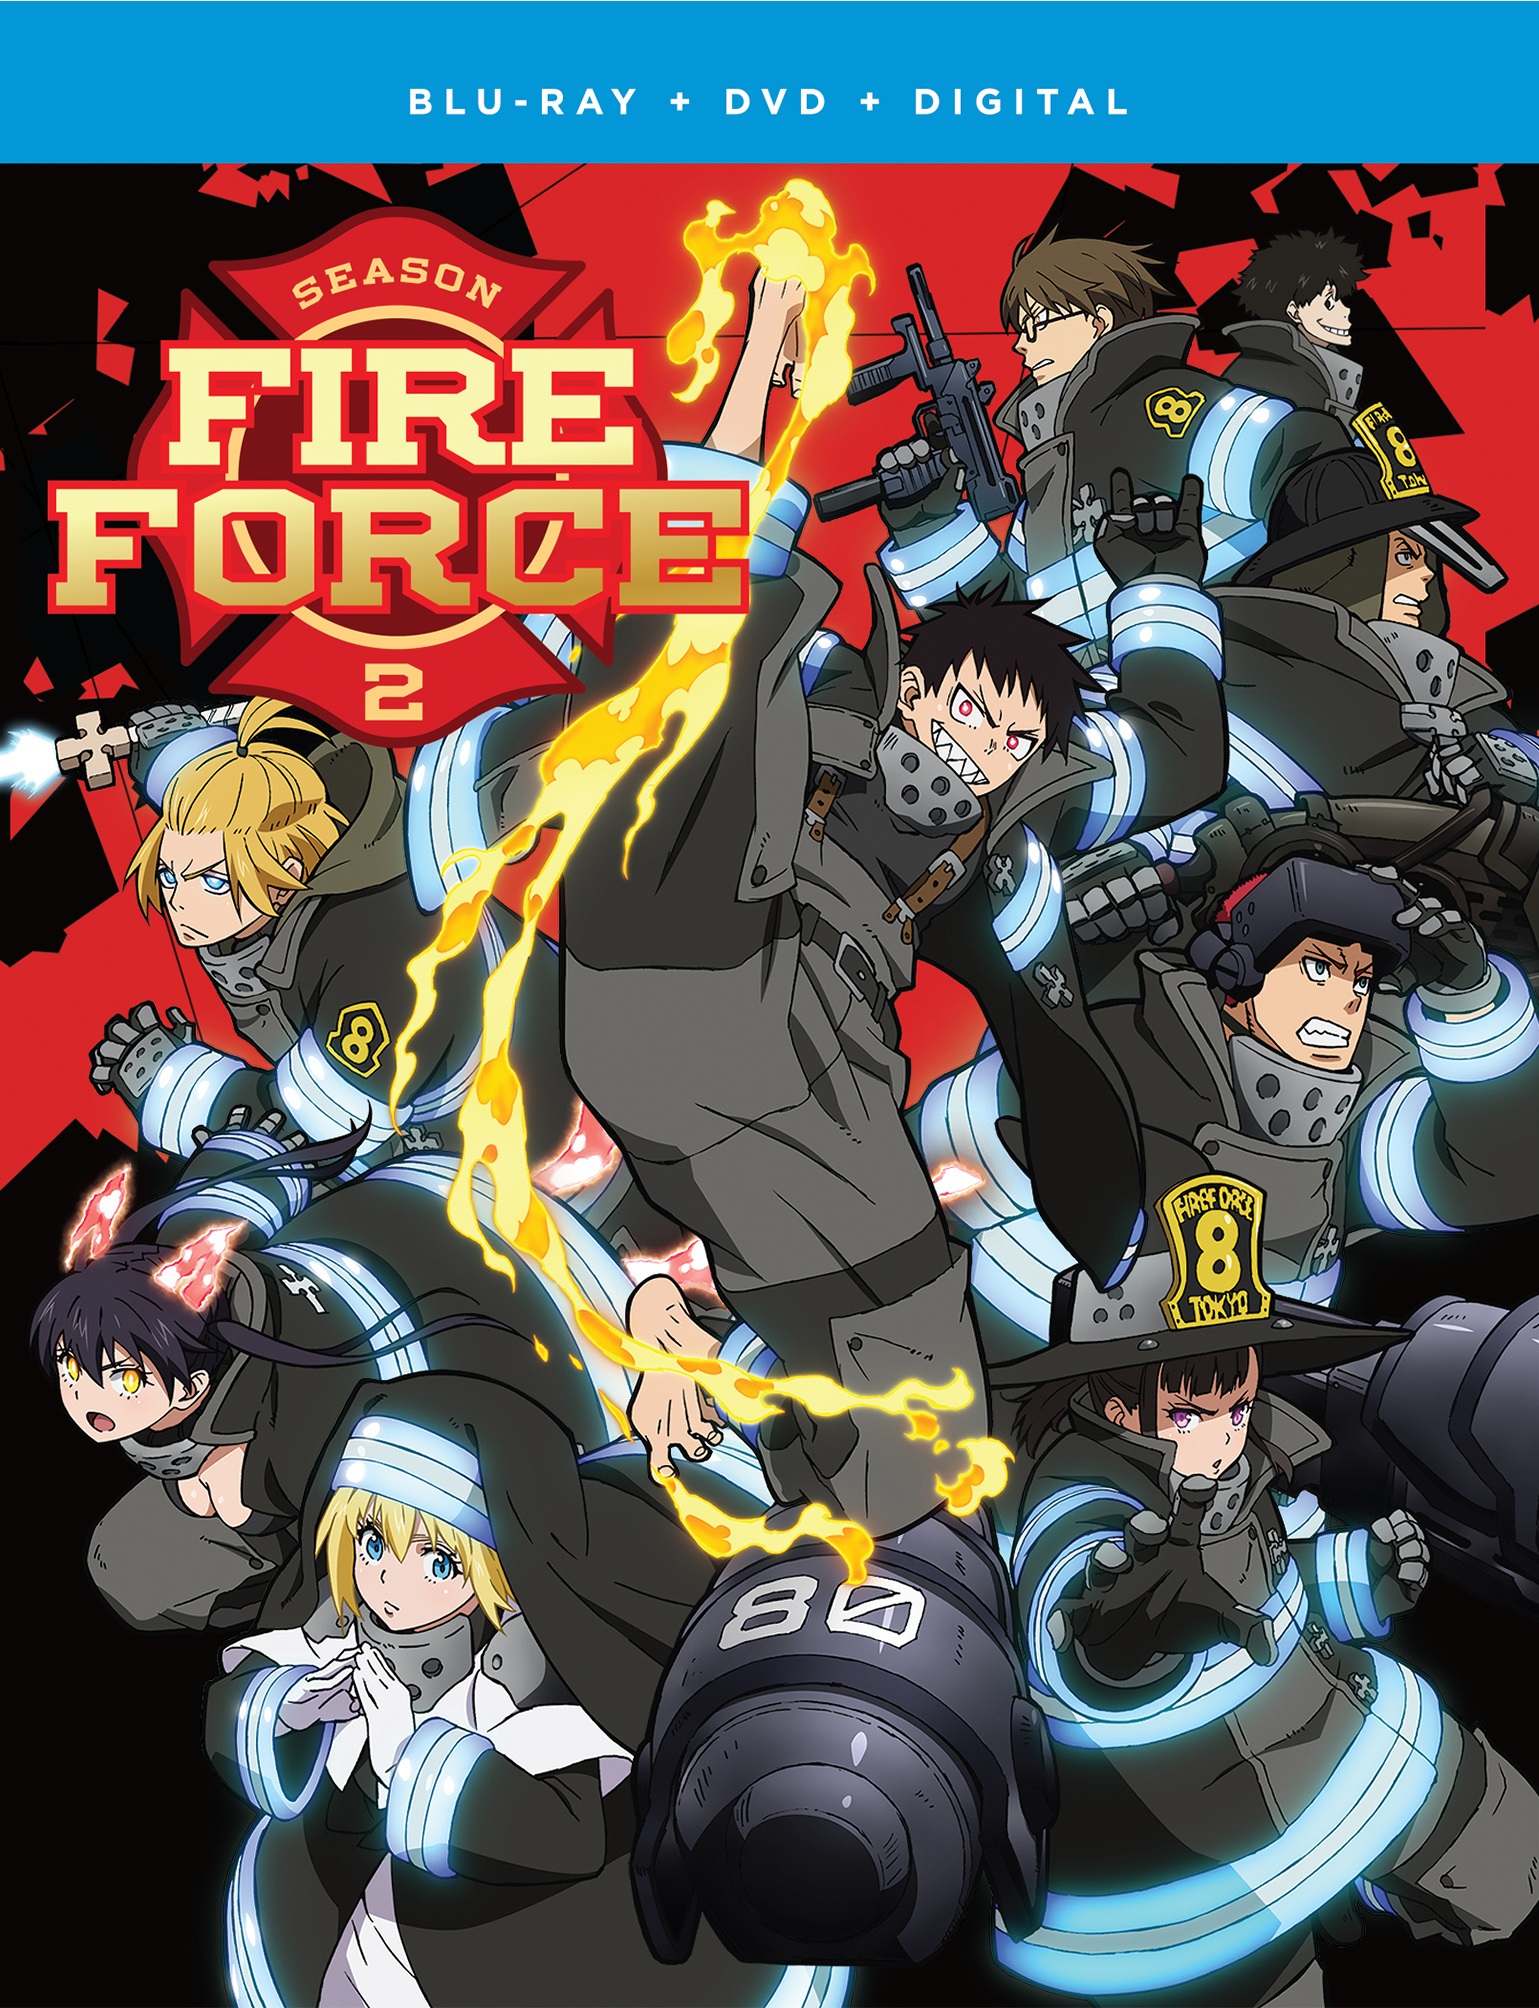 Fire Force Season 2